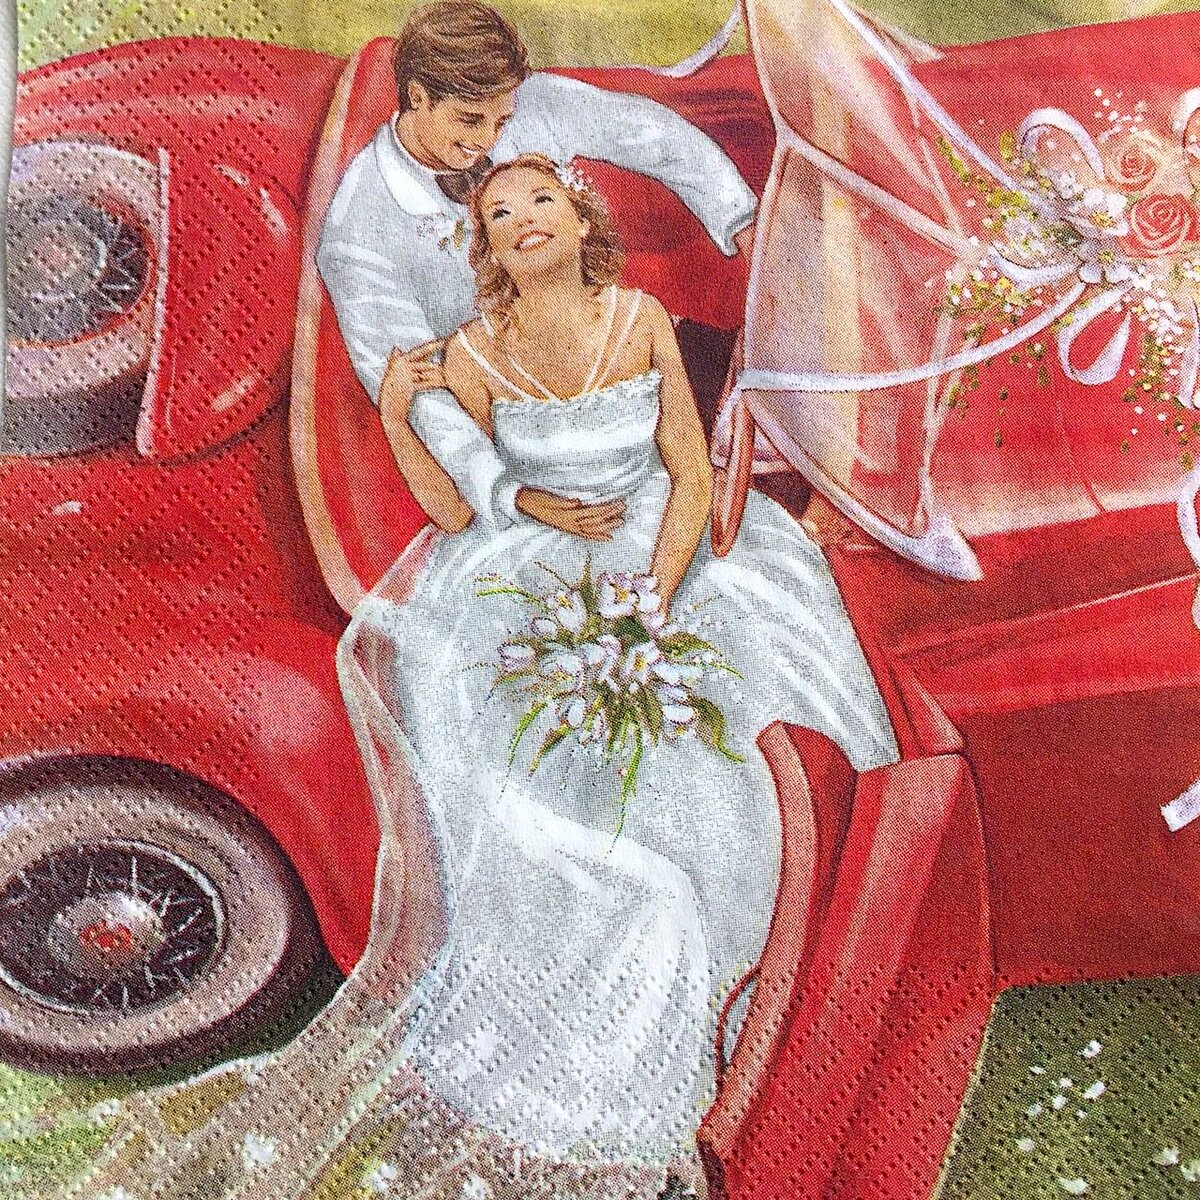 Свадебные иллюстрации